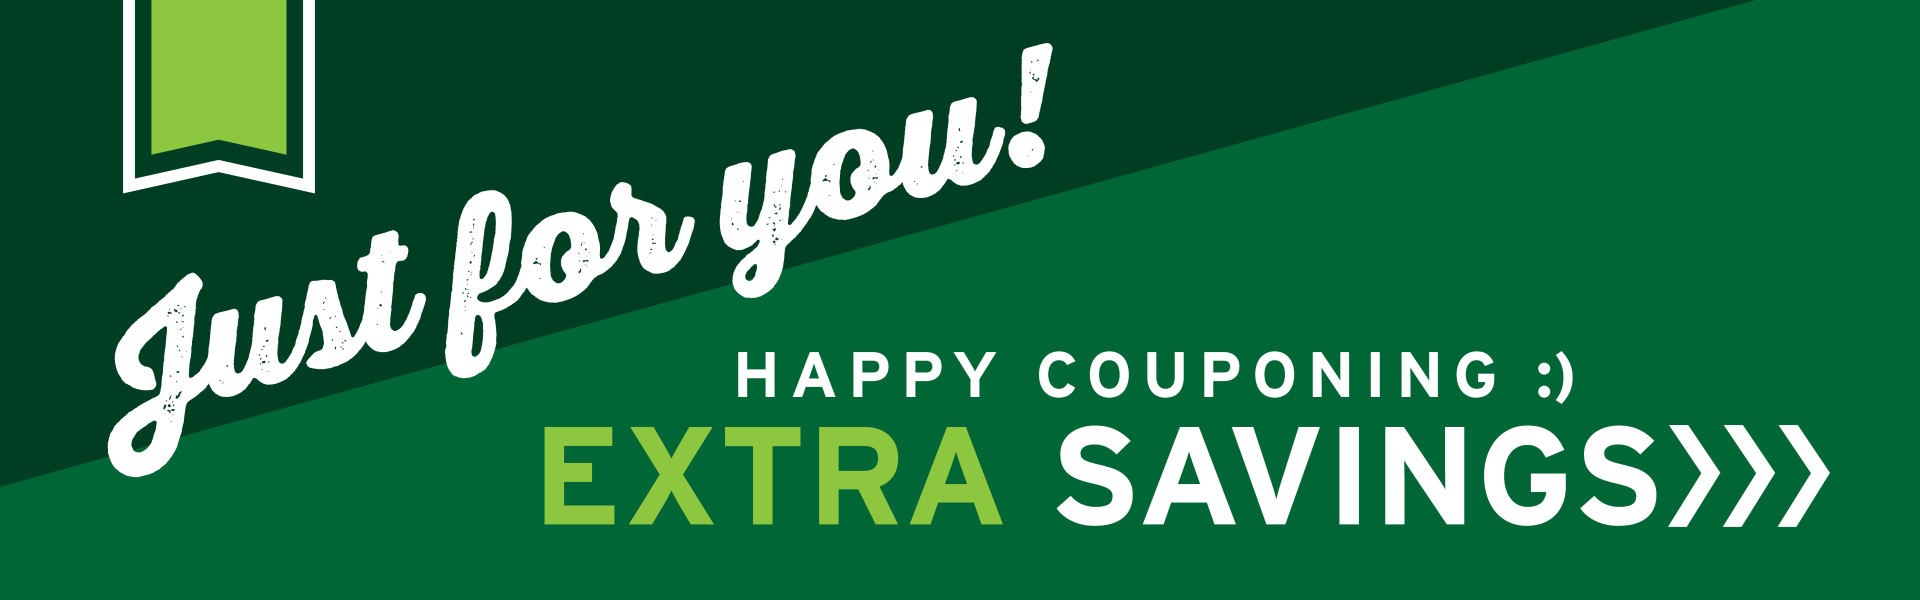 Coupons - Extra Savings